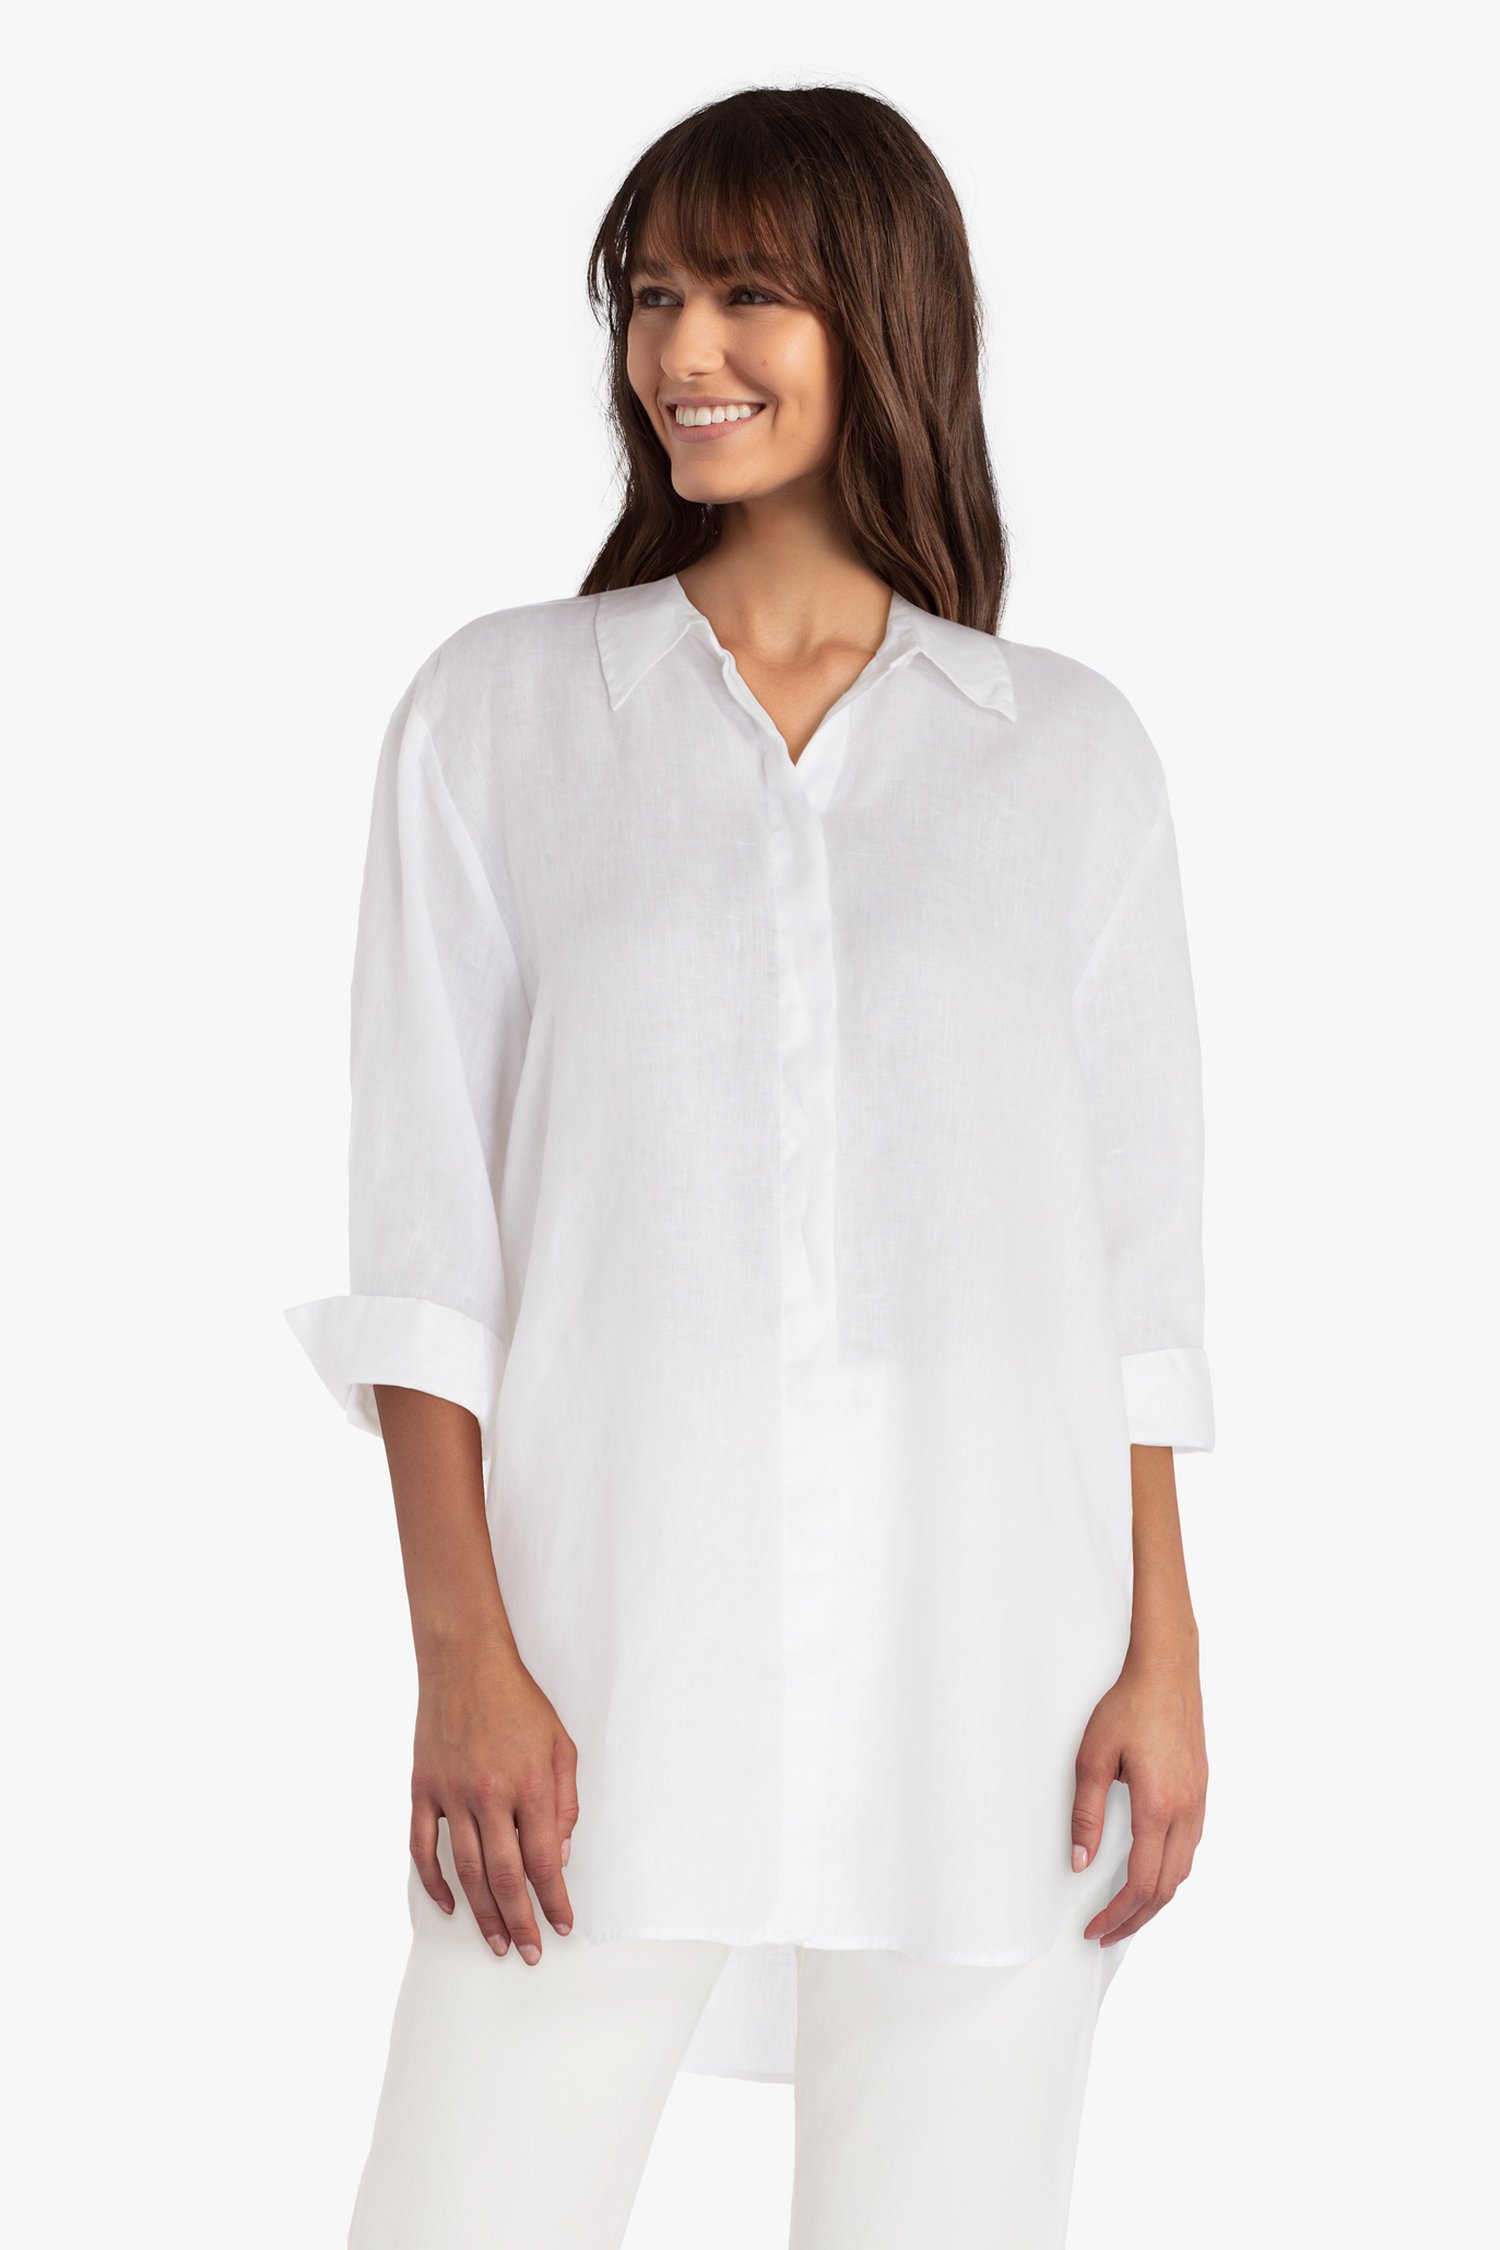 Compliment Continu Heel Witte linnen blouse van Opus | 9667159 | e5